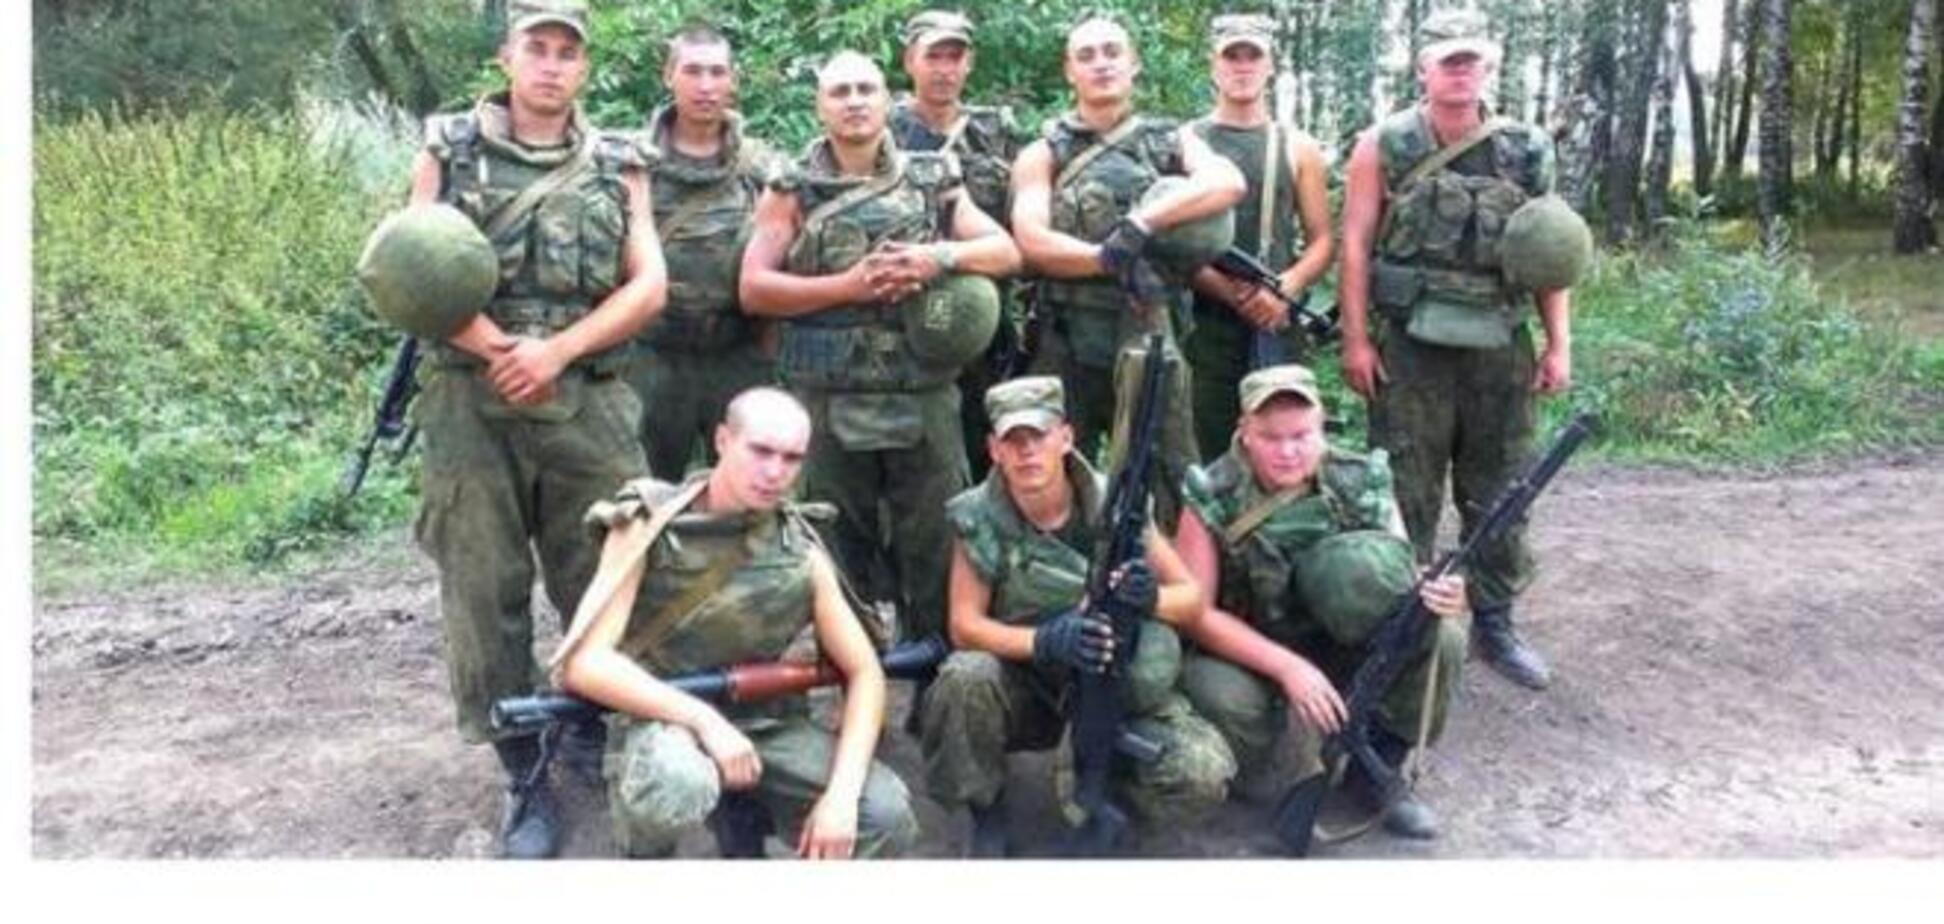 ЗМІ назвали частини військ РФ, які воюють в Україні